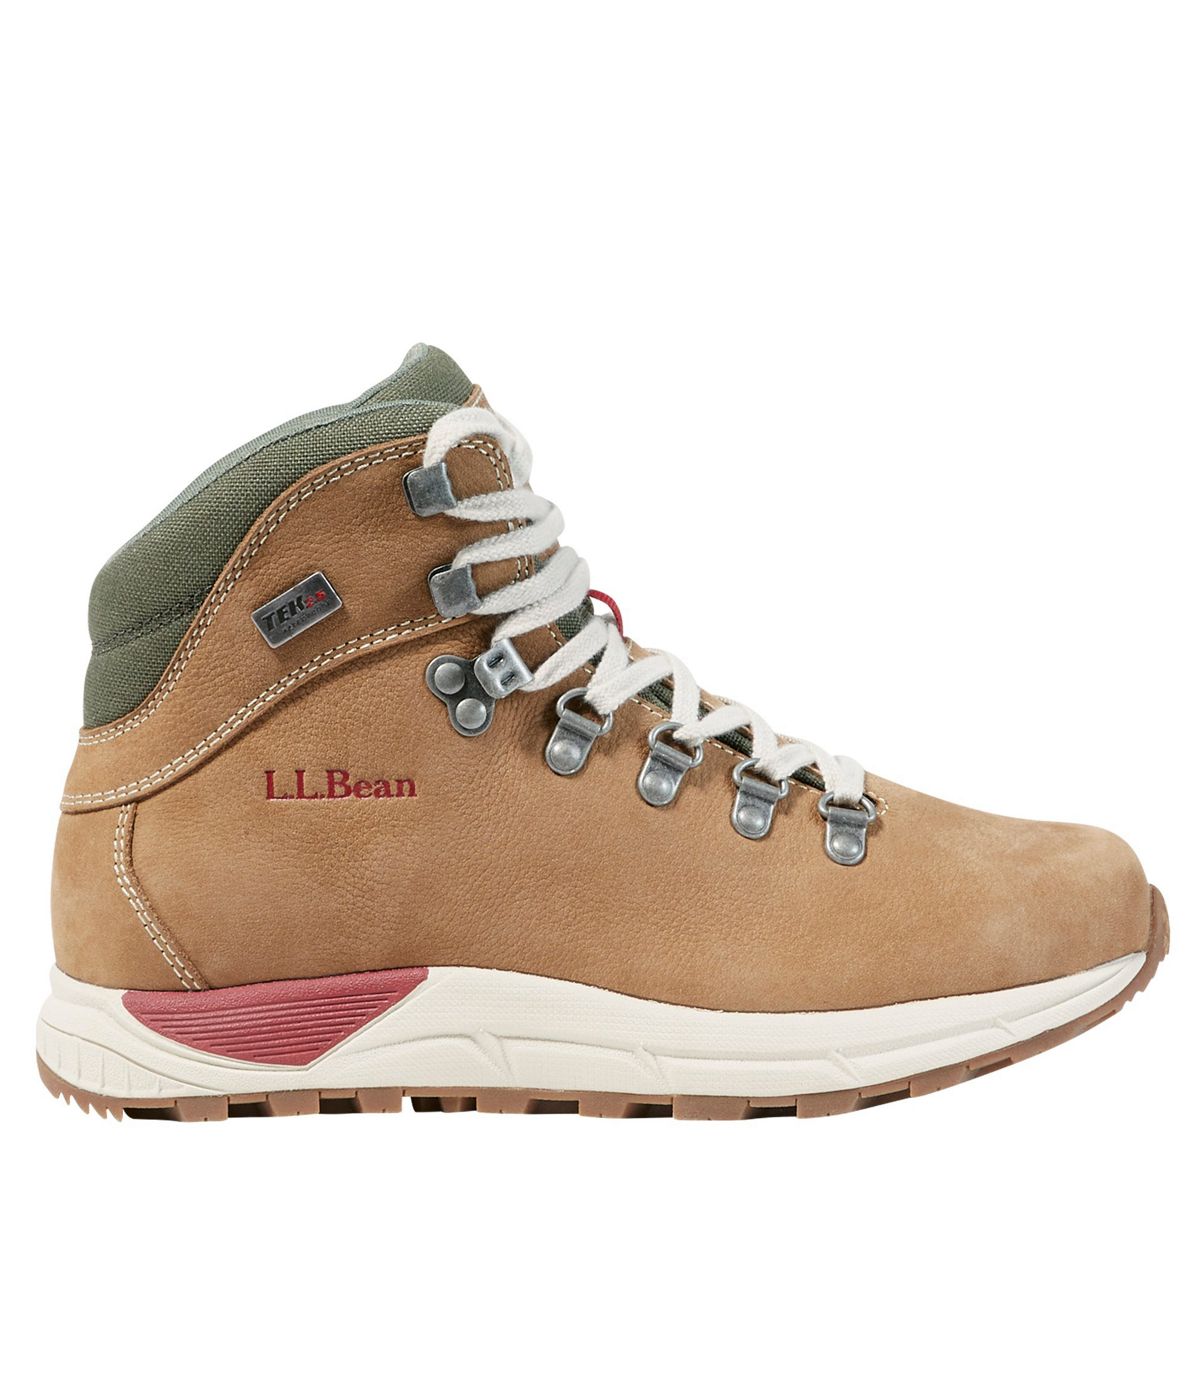 L.L. Bean + Women’s Alpine Hiking Boots, Nubuck